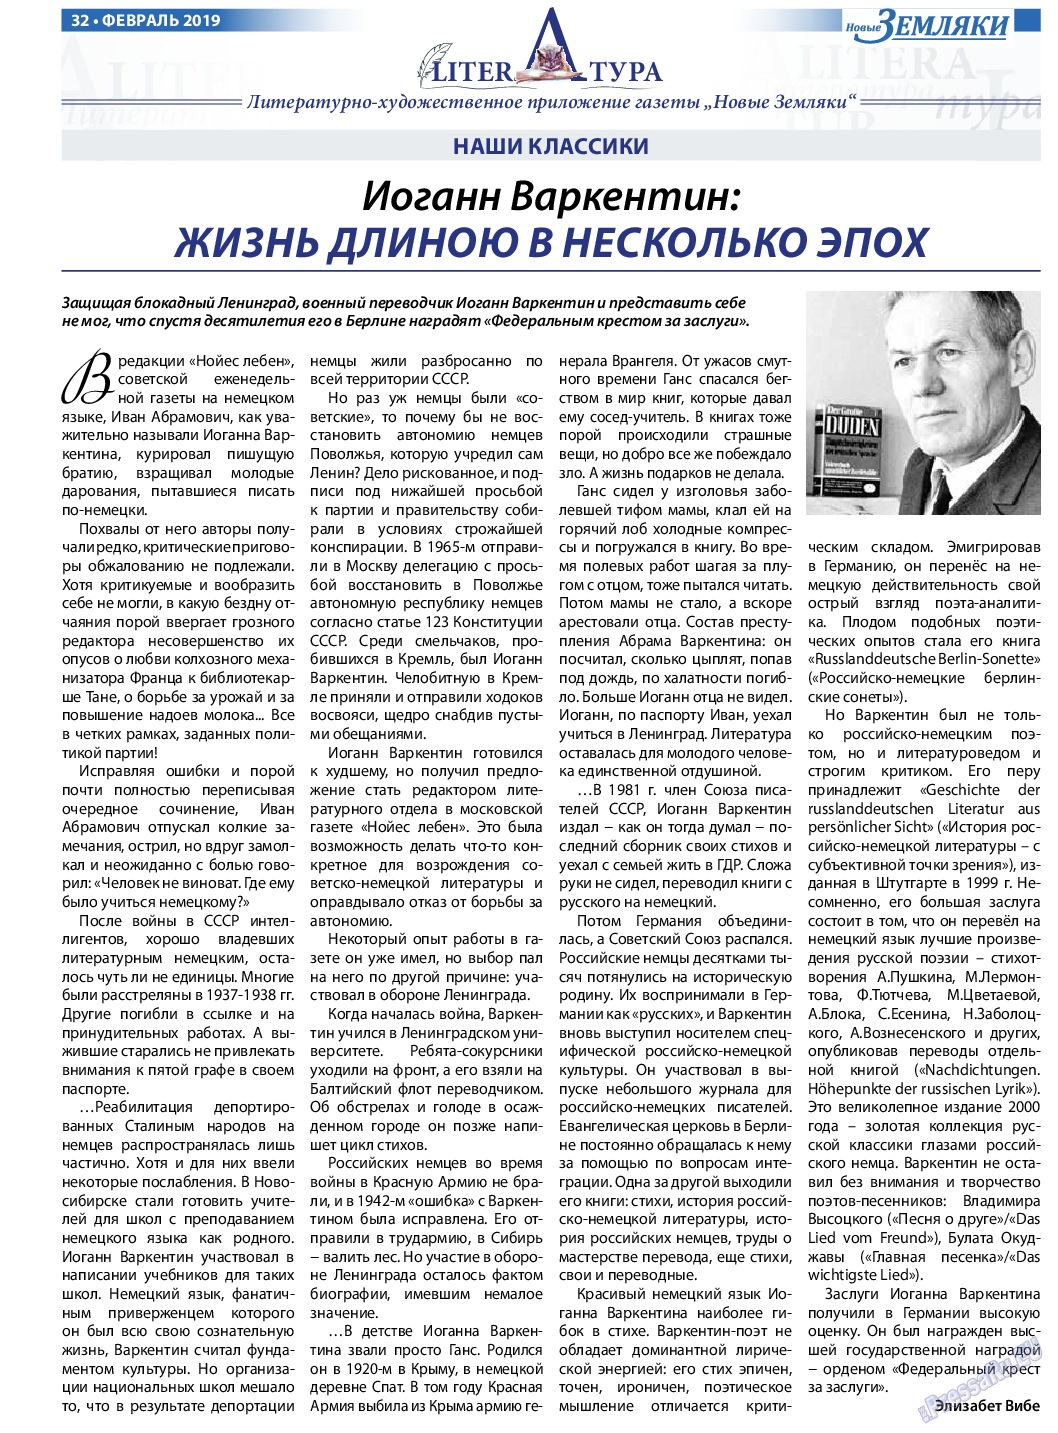 Новые Земляки, газета. 2019 №2 стр.32